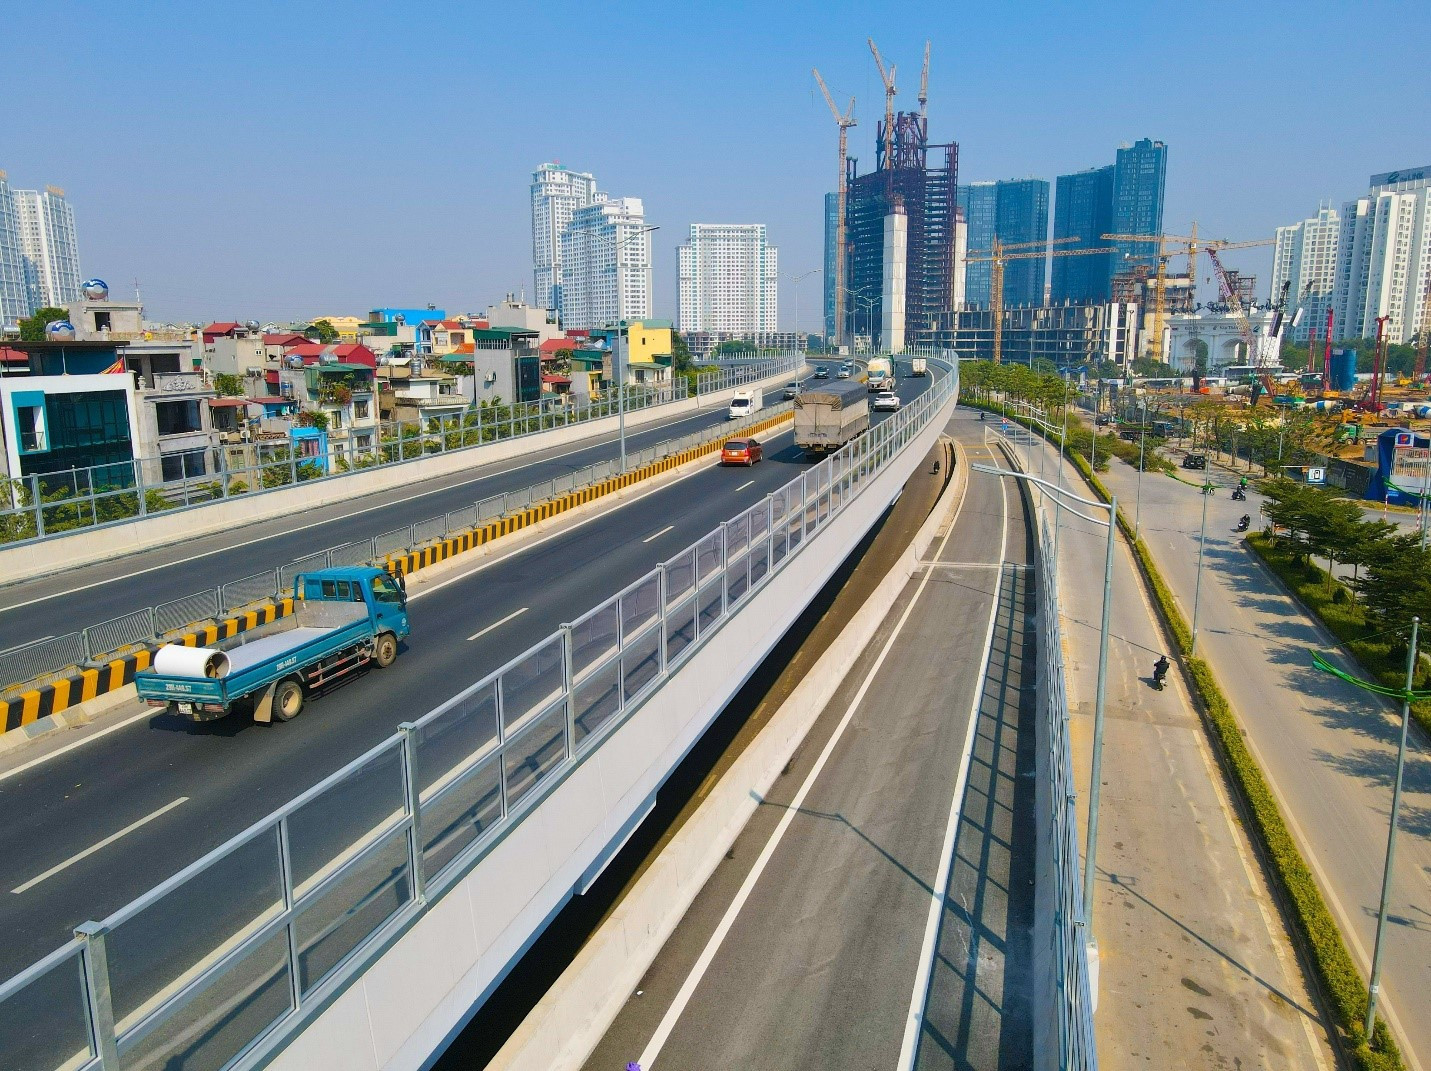 Đầu tư lắp đặt vách chống ồn trên đường cao tốc có lợi gì? - Ảnh 1.